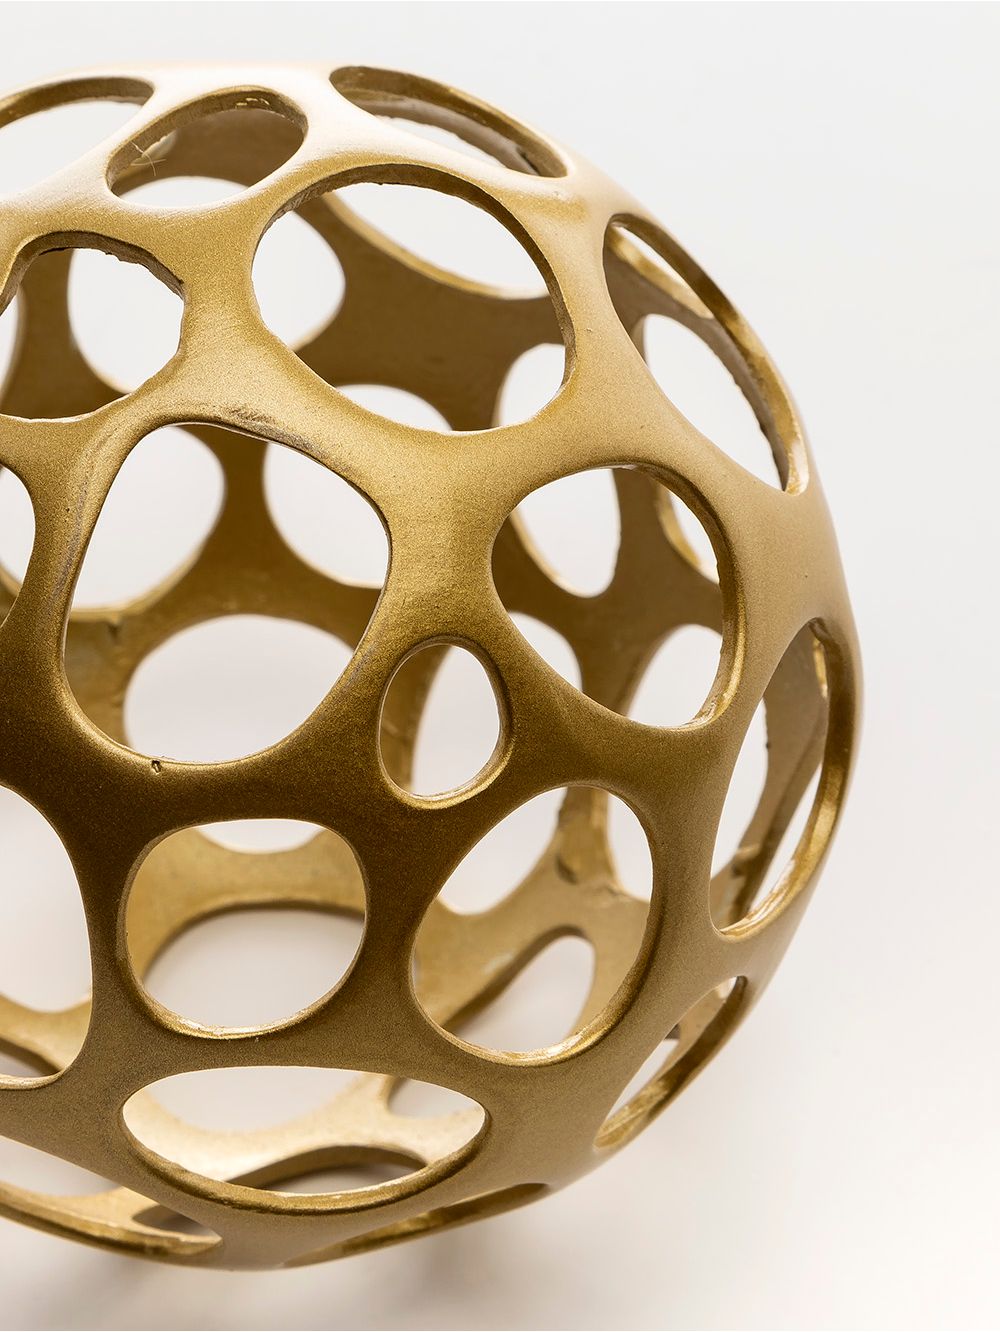 Adorno-esfera-de-metal-bronce-MILLER-SMALL-Landmark-01